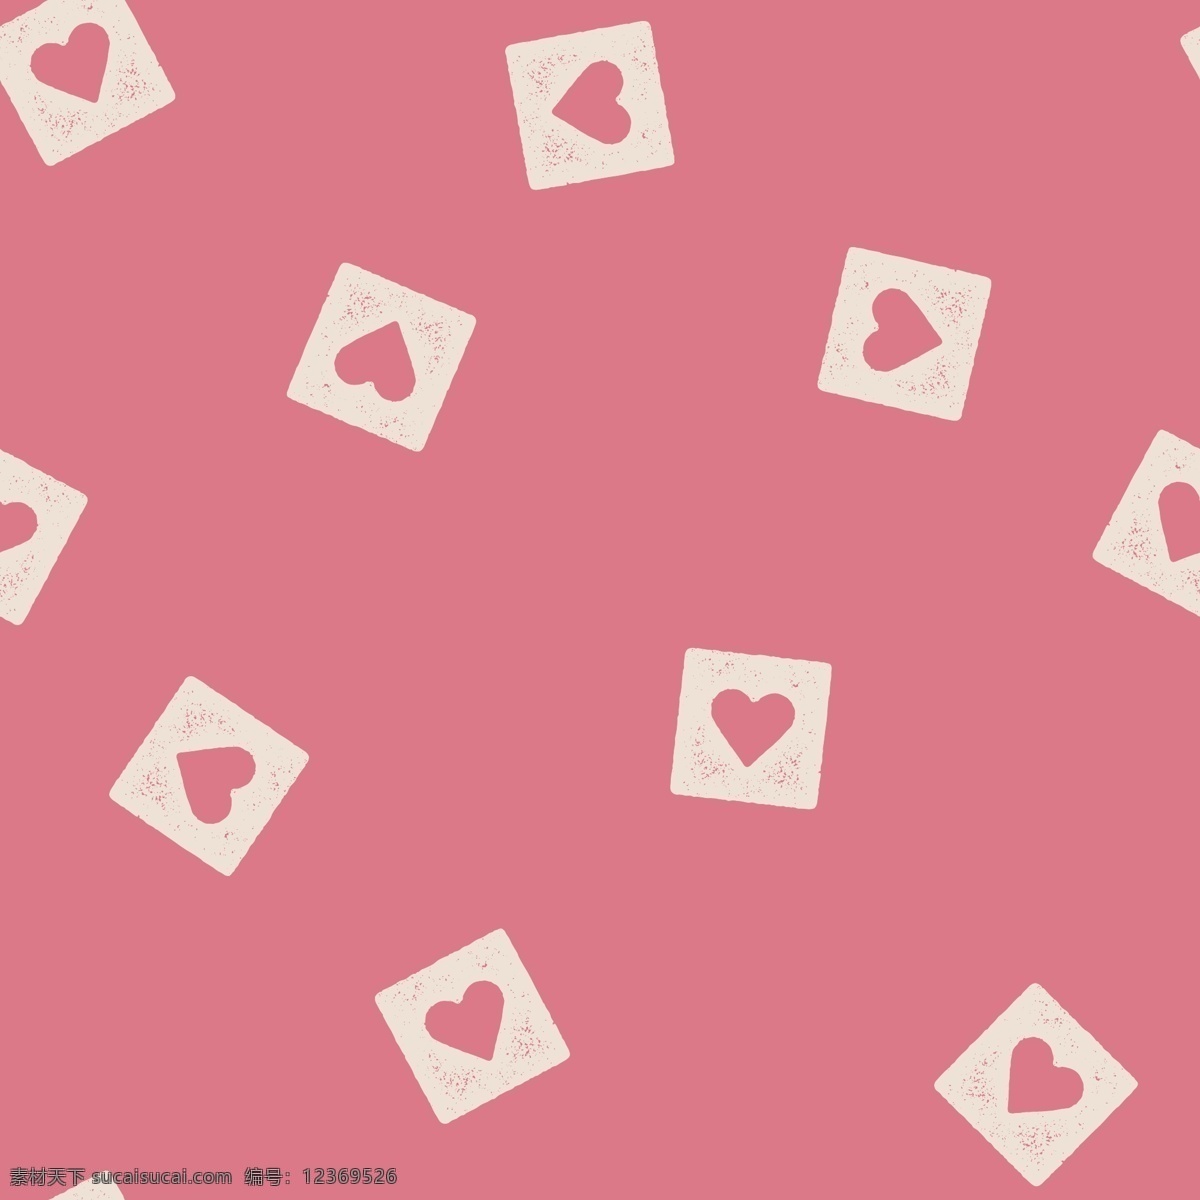 粉红色 正方形 爱心 背景 填充 白色 简单 心形 方格